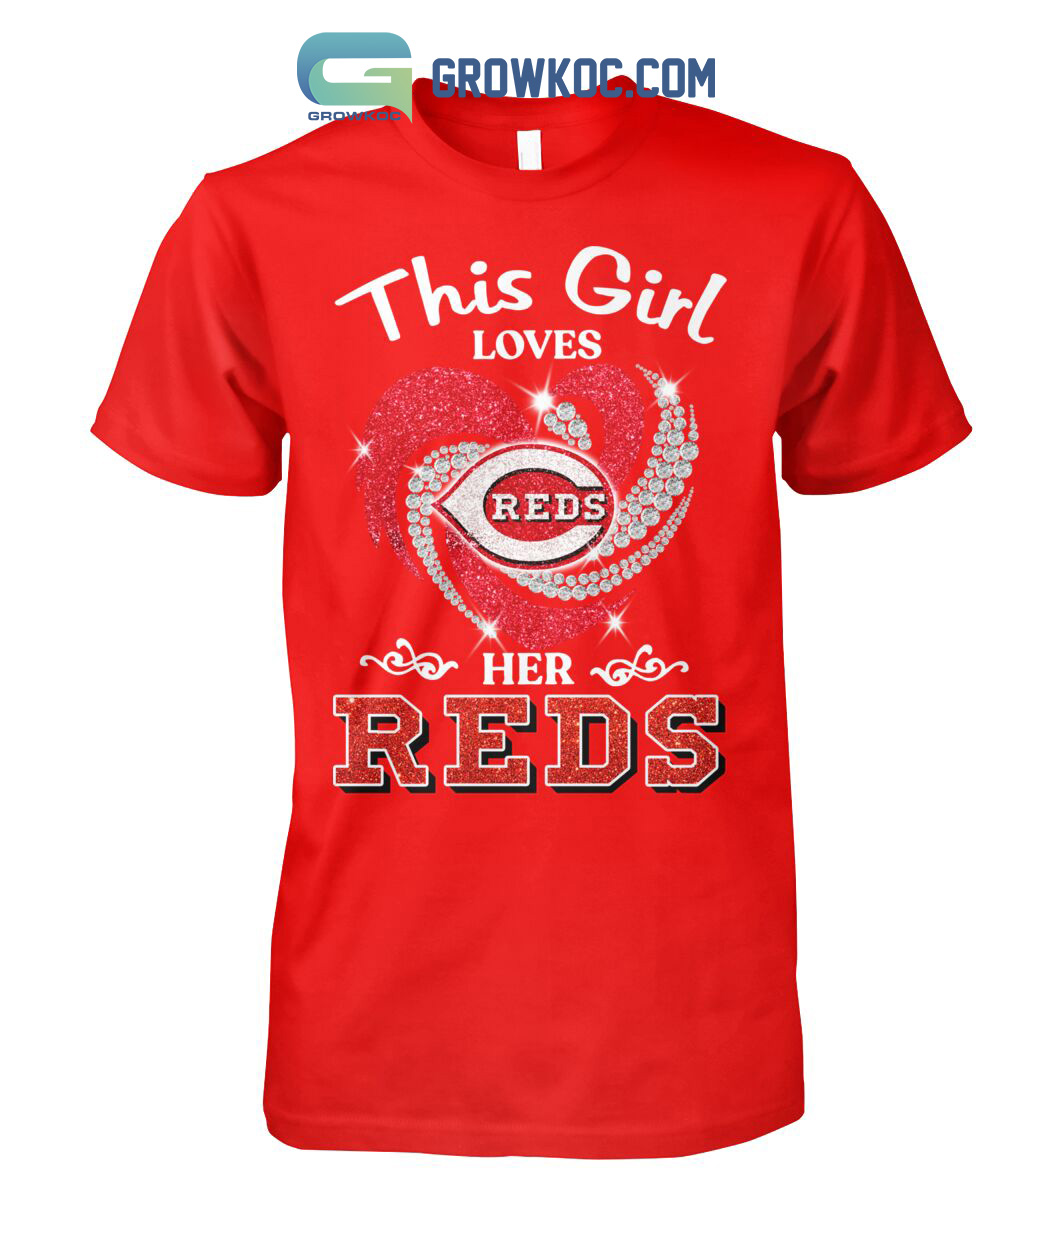 Real Women Love Baseball Smart Women Love The Cincinnati Reds T Shirt -  Growkoc